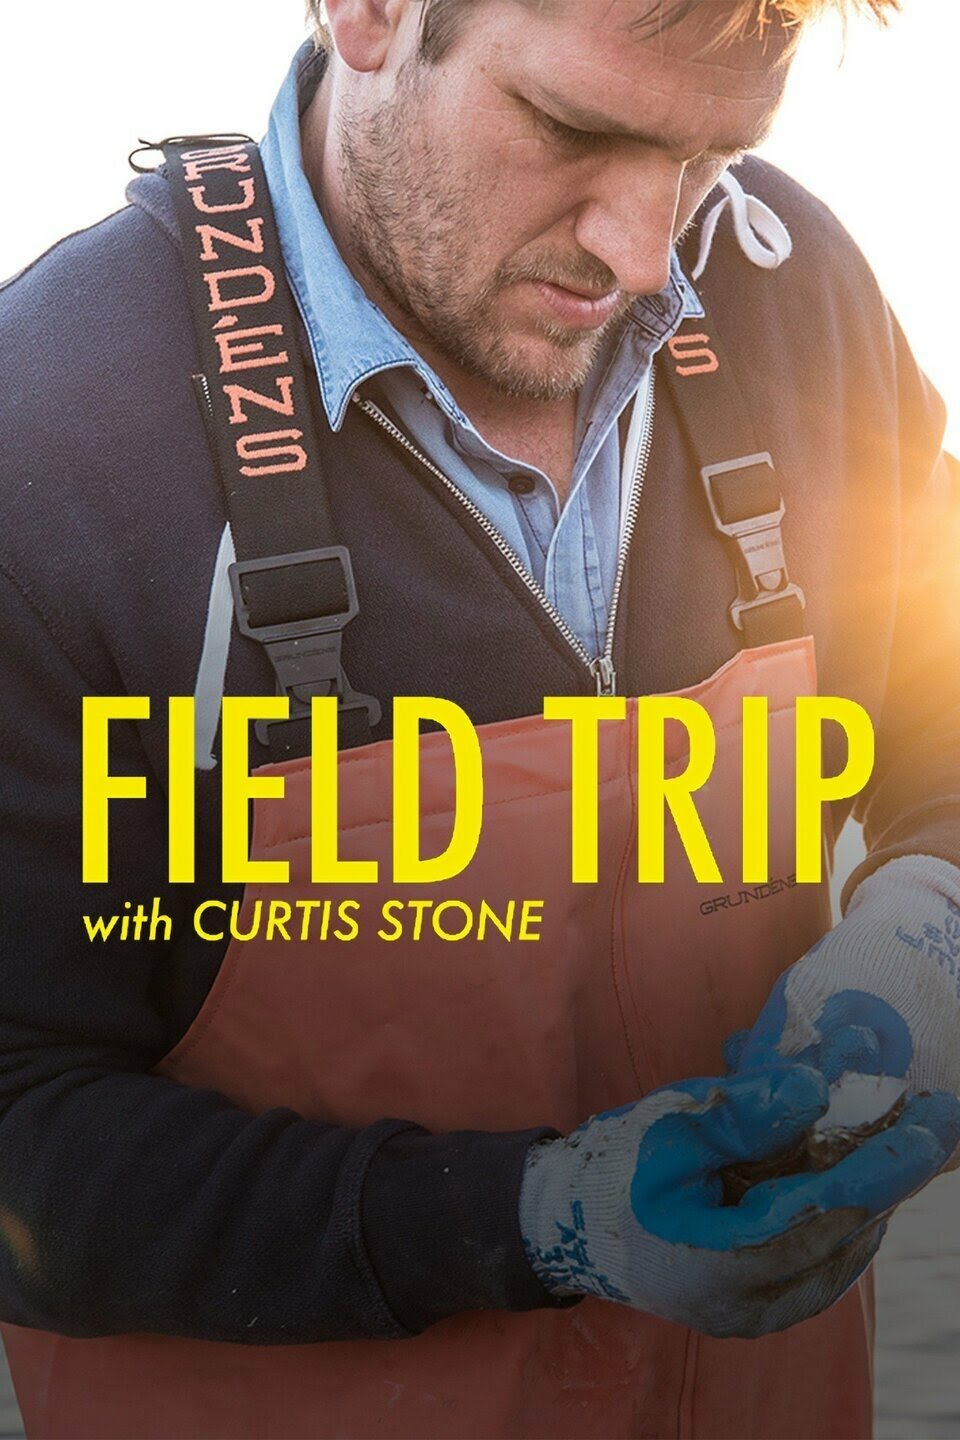 Field Trip with Curtis Stone ne zaman